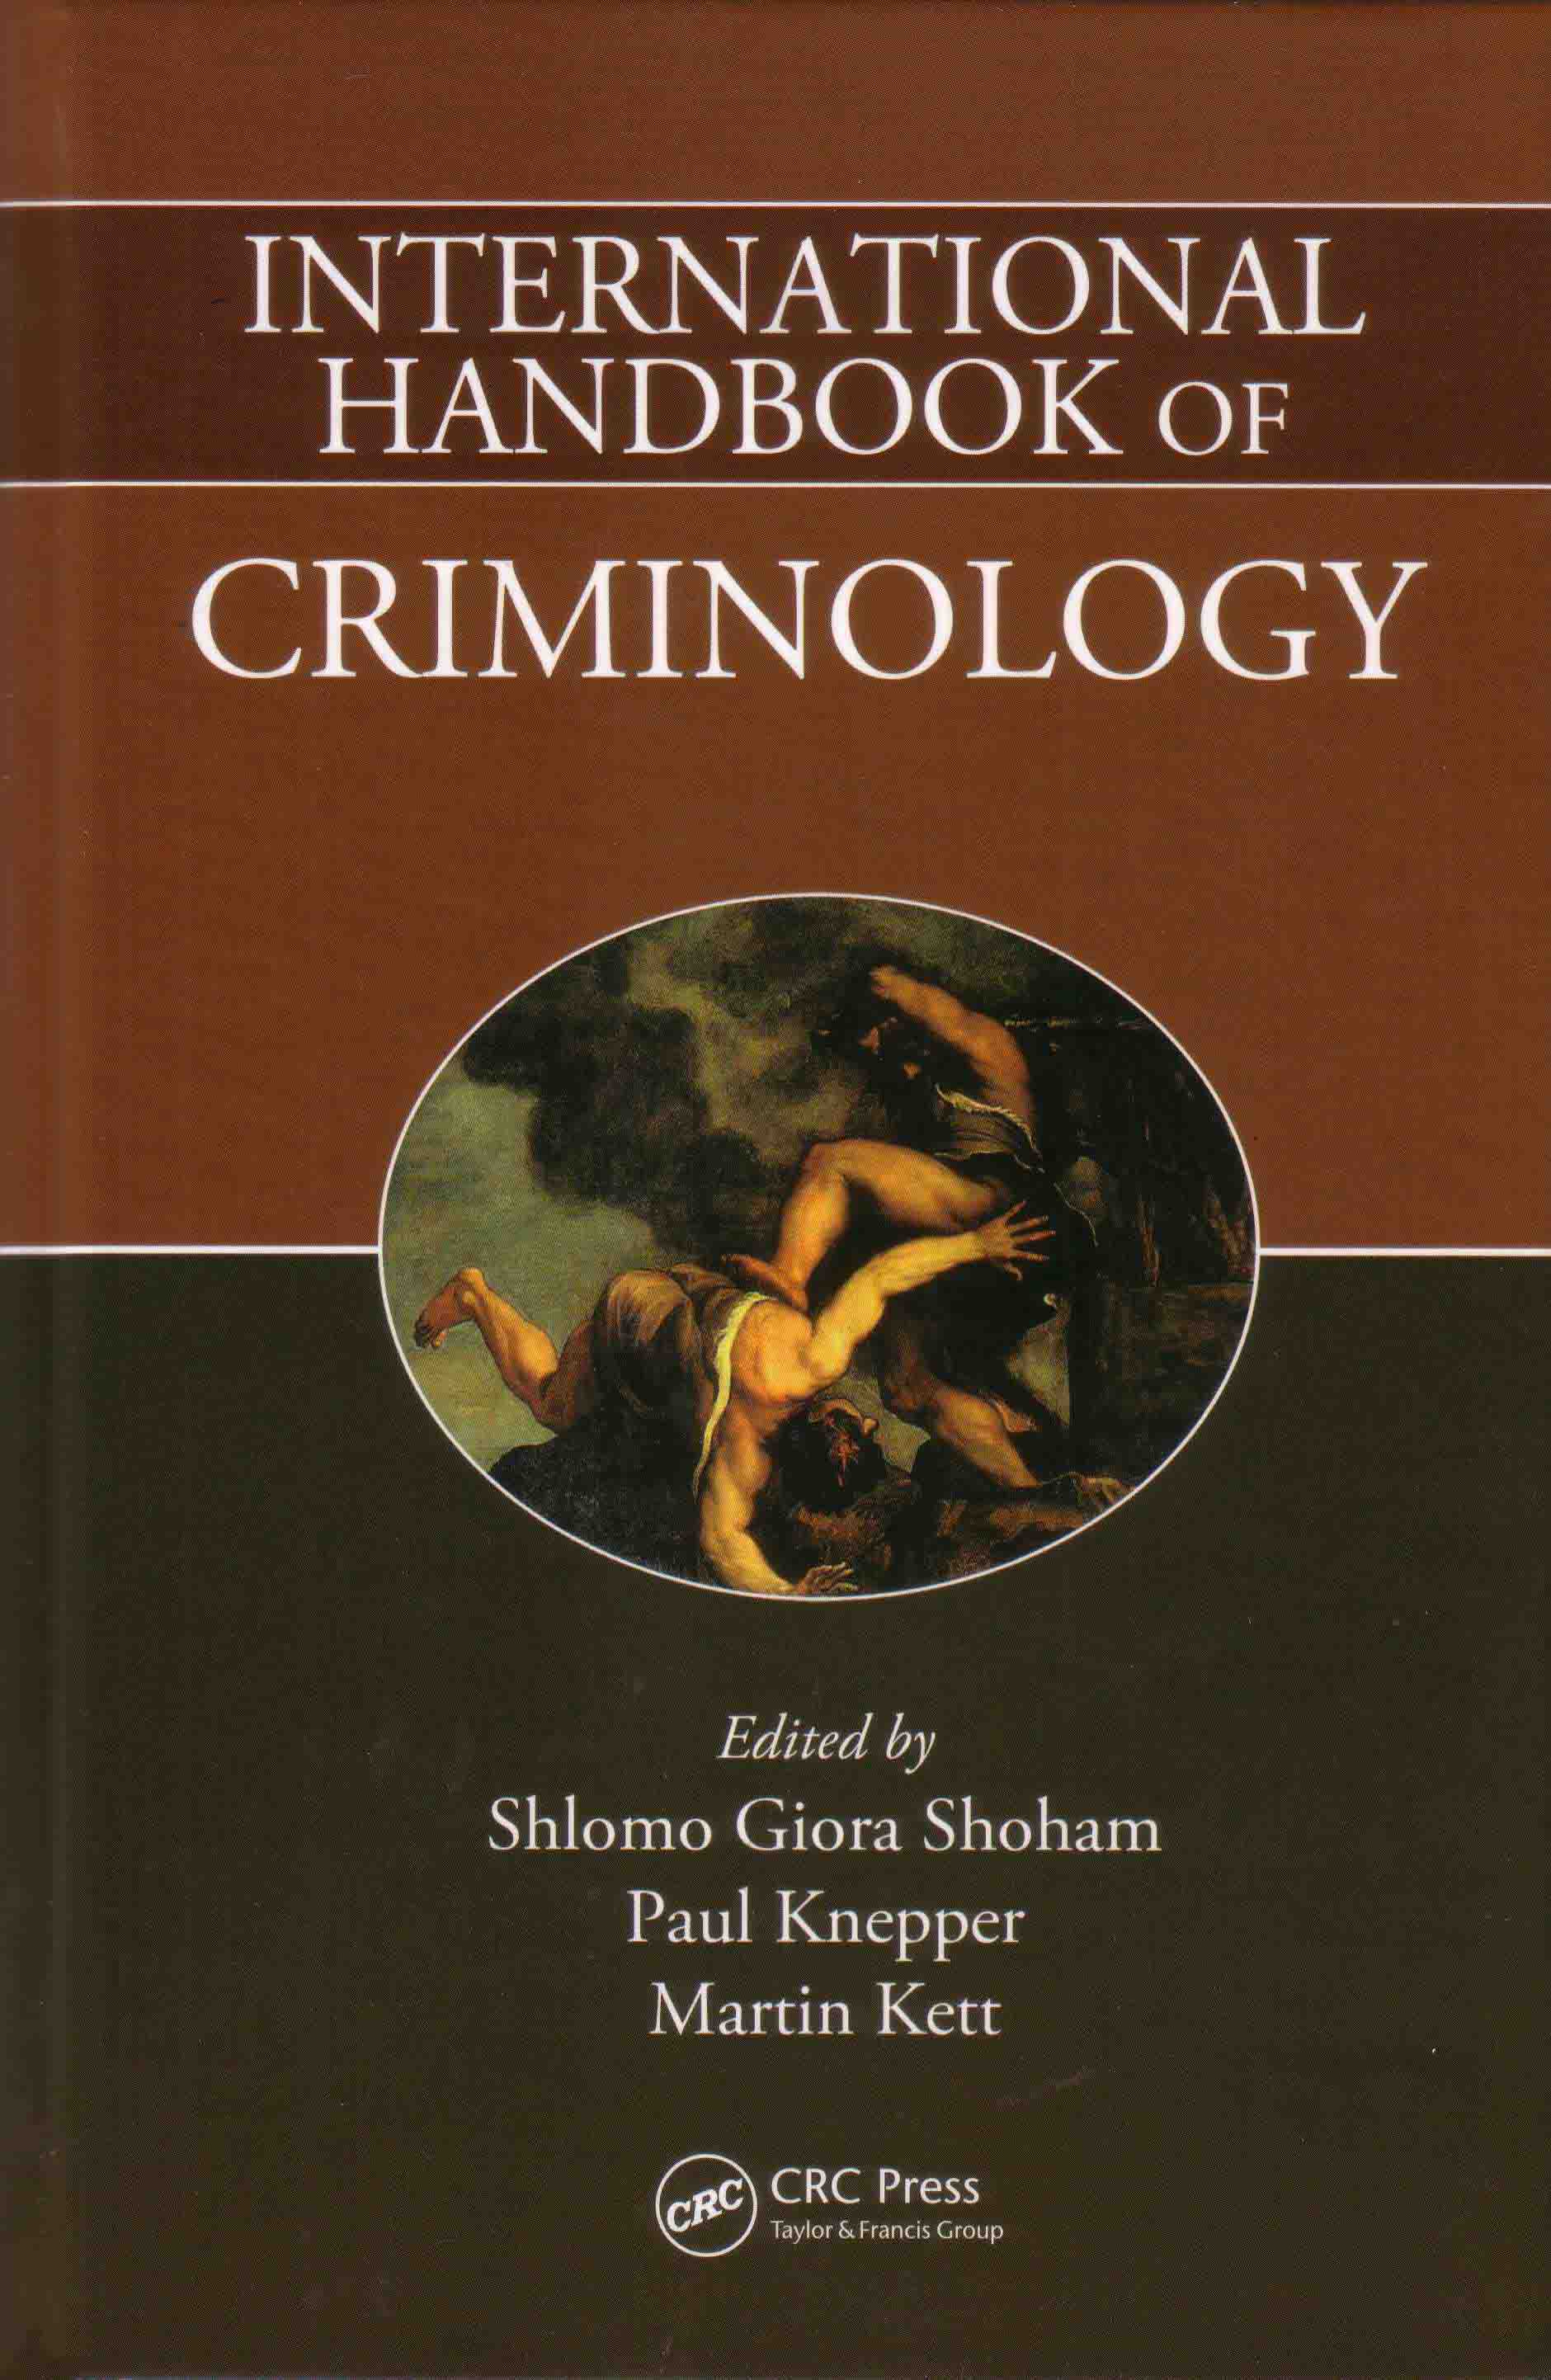 International Handbook of Criminology, First Edition, edited by Shlomo Giora Shoham, Paul Knepper and Martin Kett